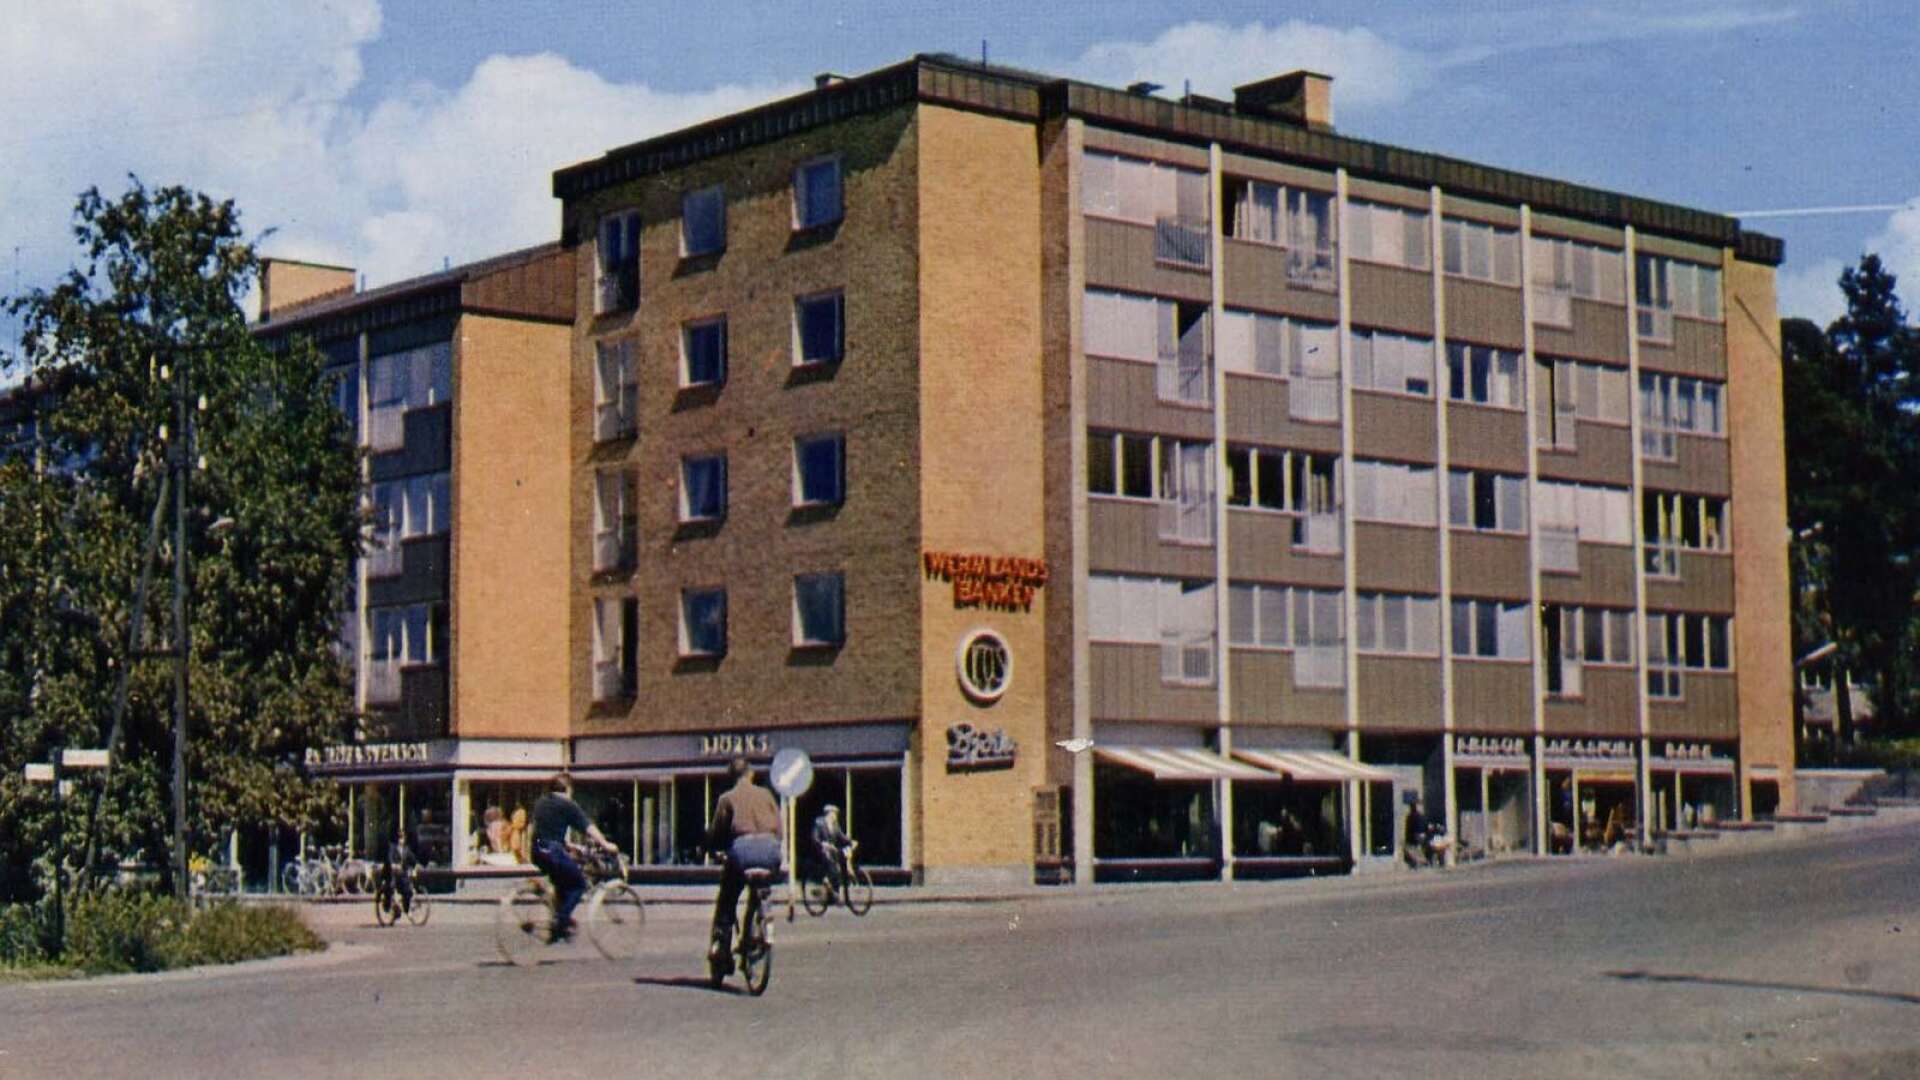 Hakondihuset kallas i folkmun affärshuset vid hörnet Mörmovägen–Björkhagsgatan. Björks herrekipering flyttade hit när huset var nytt 1961 och fanns kvar i ytterligare cirka 50 år.